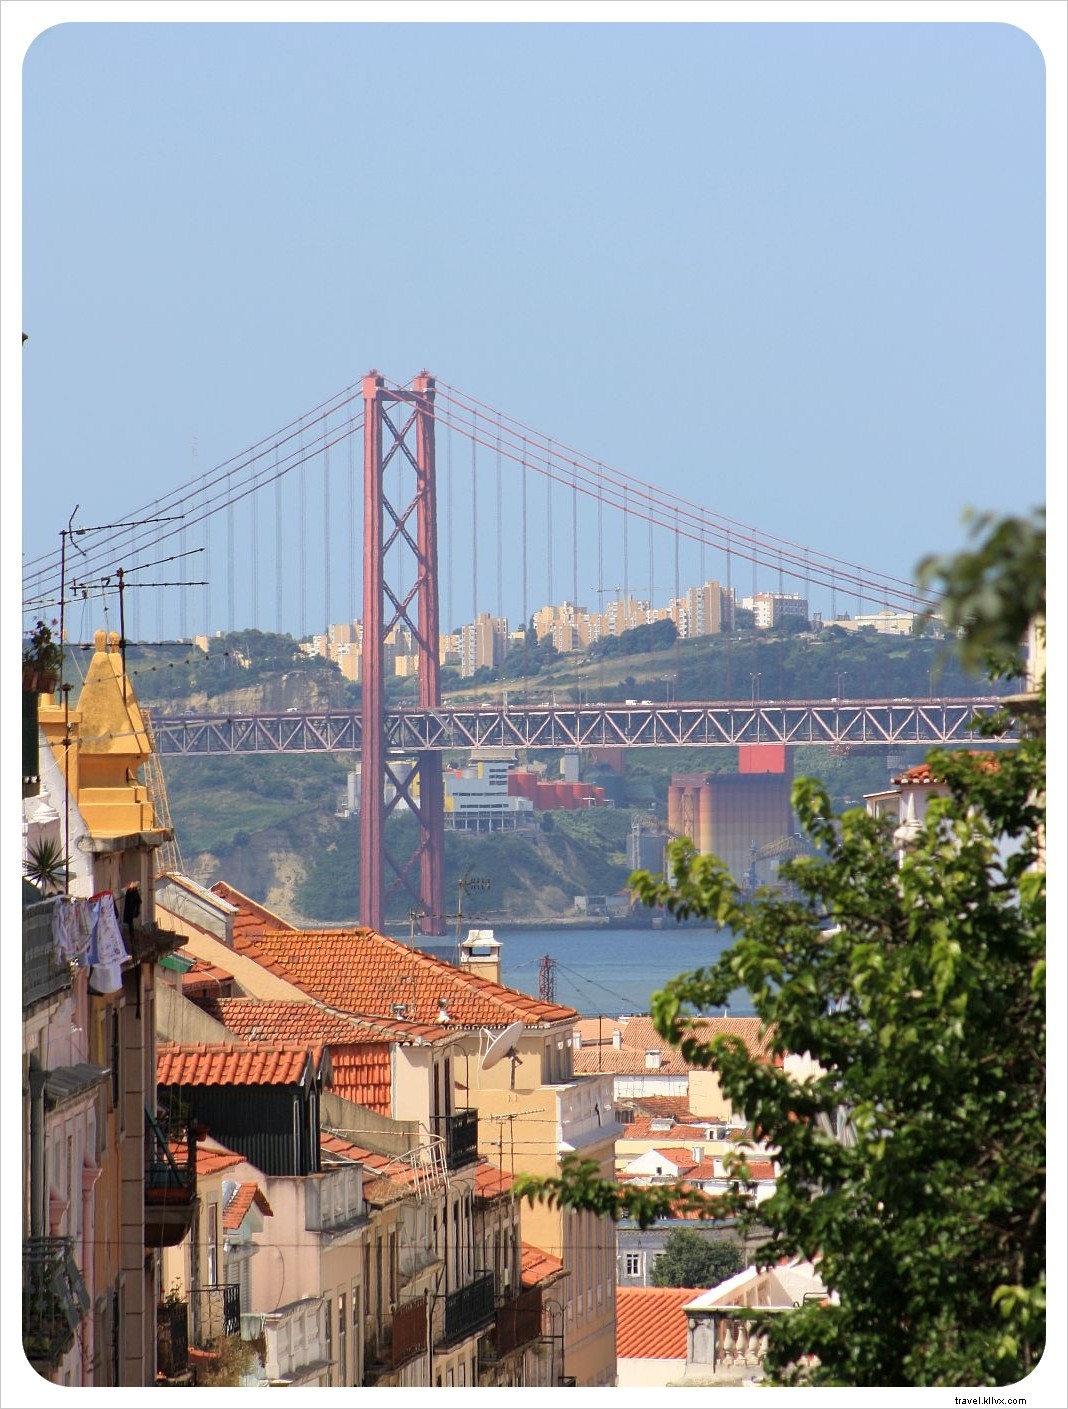 Lisbon di Atas Roda – Keluar dan Berkendara!